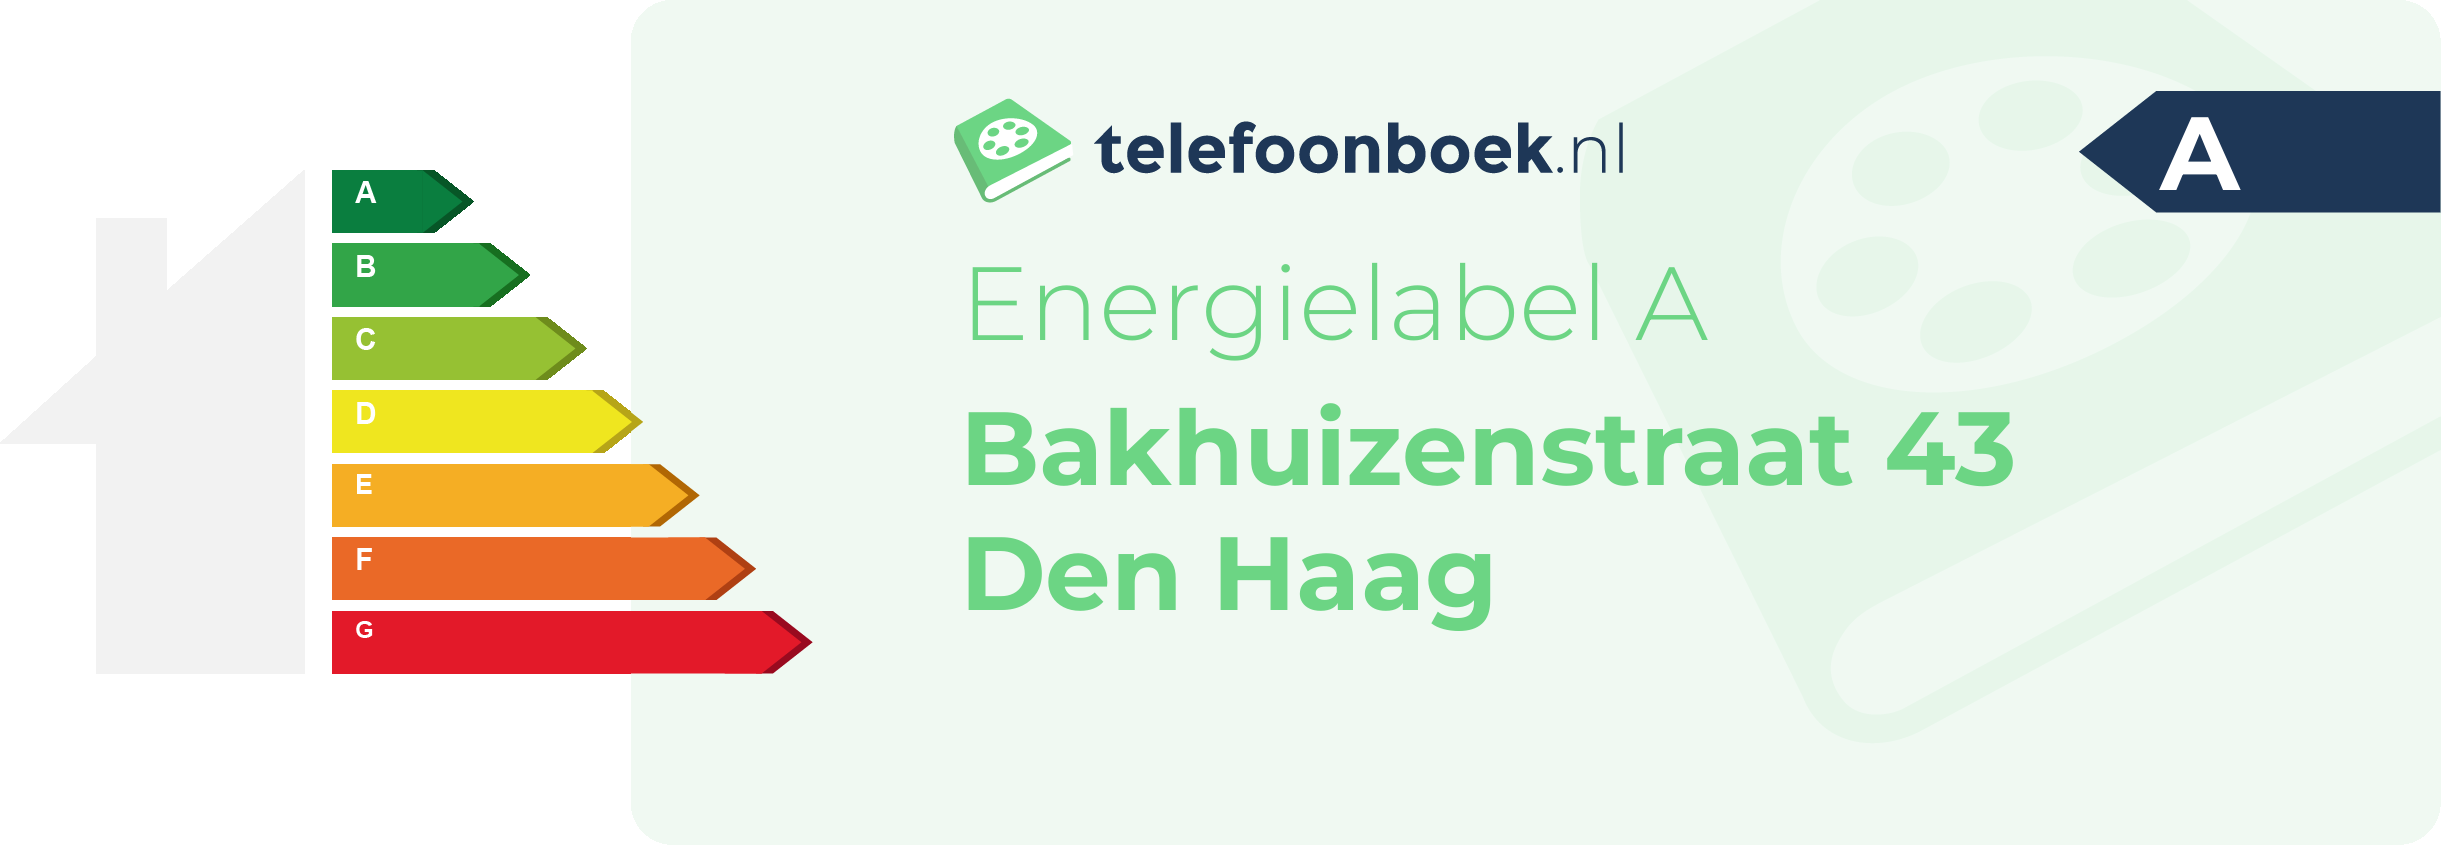 Energielabel Bakhuizenstraat 43 Den Haag